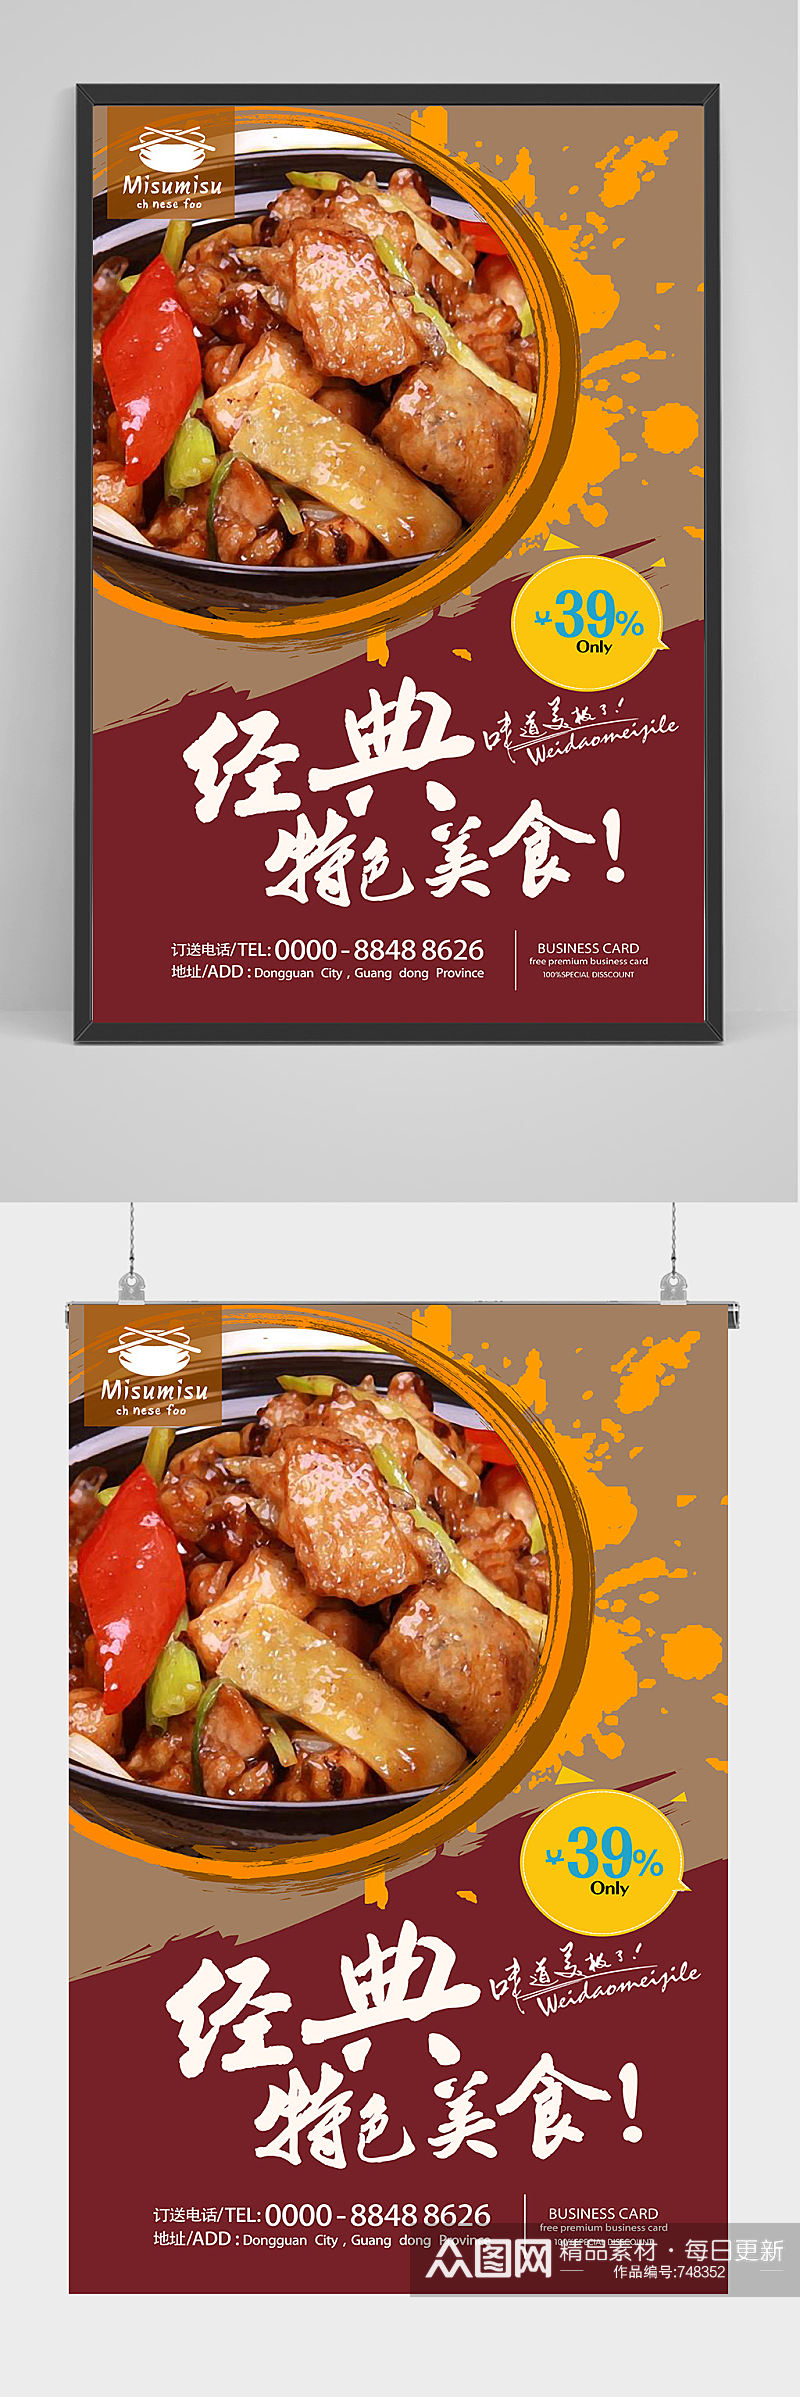 经典特色美食黄焖鸡海报设计素材